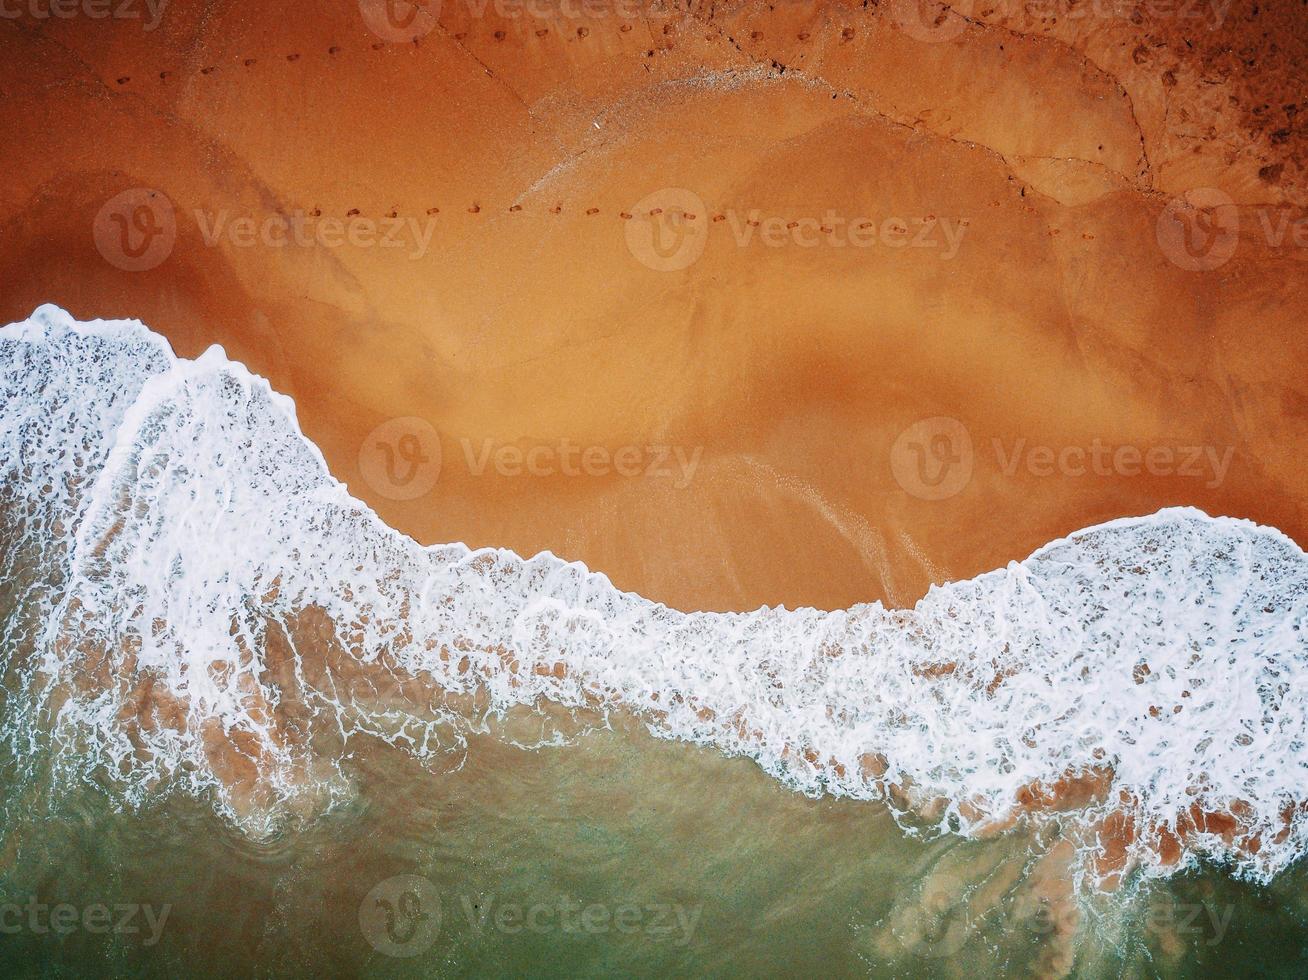 strand på antenn drönare ovanifrån med havsvågor som når stranden. foto